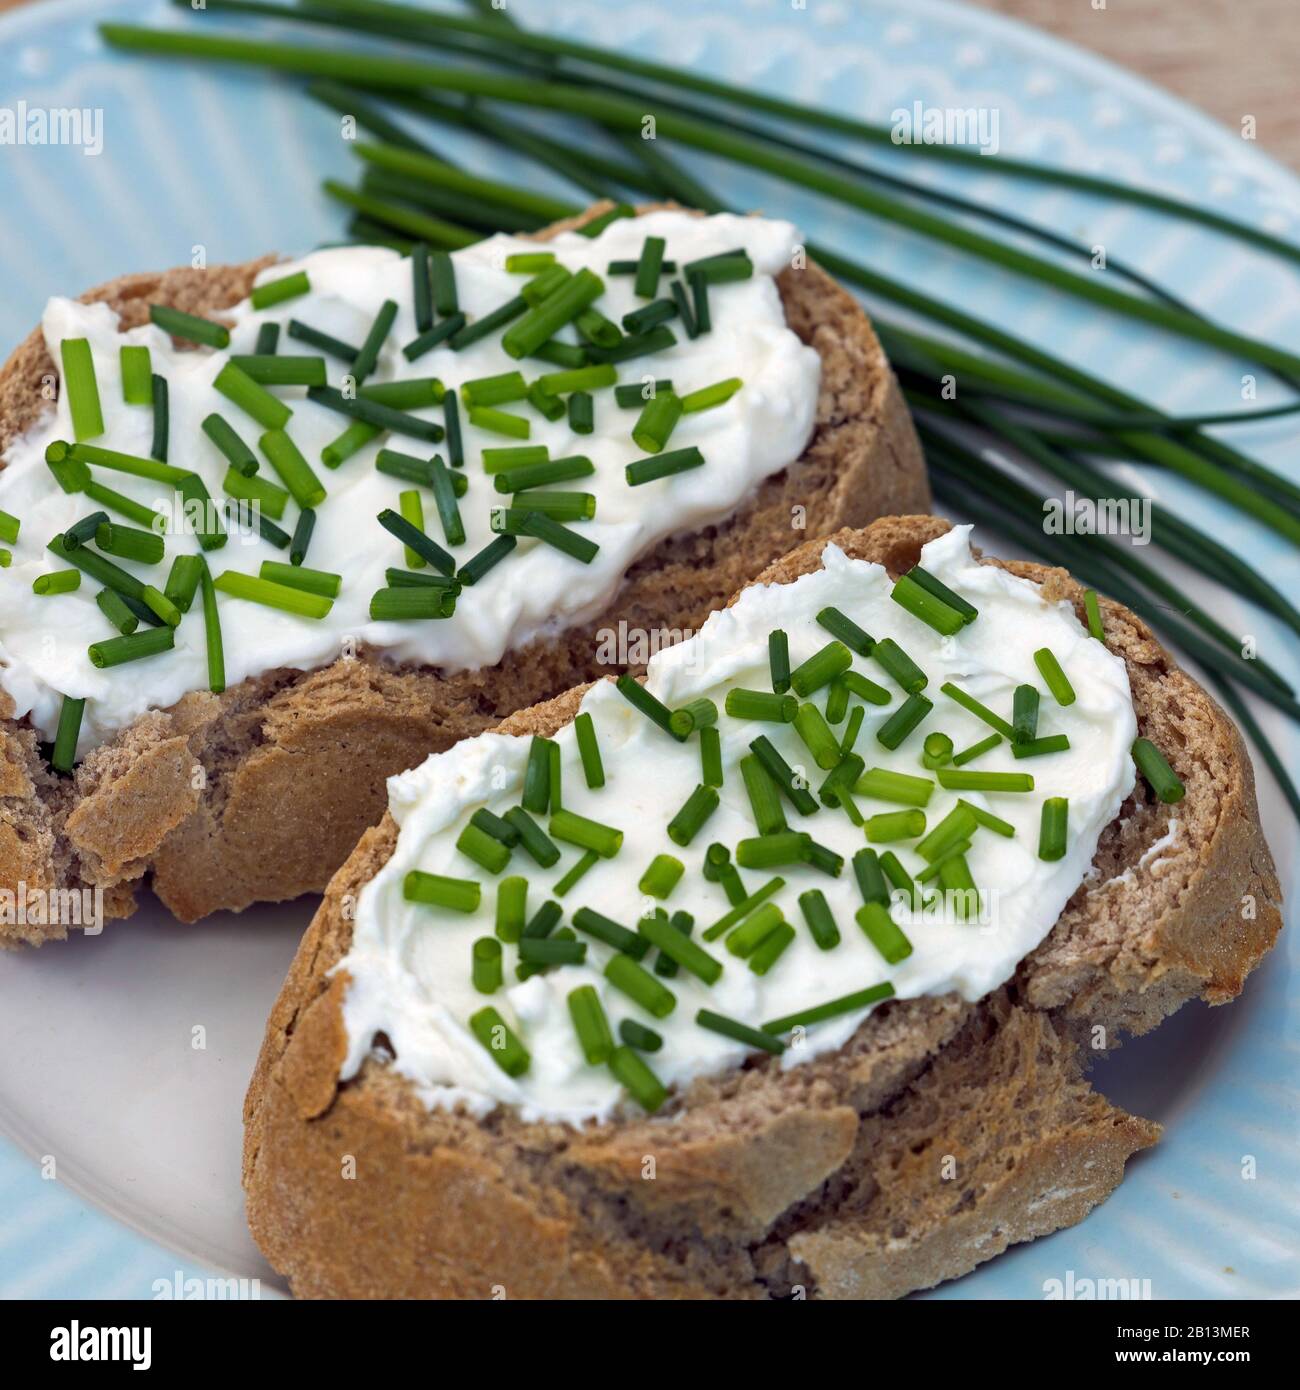 Ciboulette, poireau de sable (Allium schoenoprasum), tranches de pain avec curd et ciboulette Banque D'Images